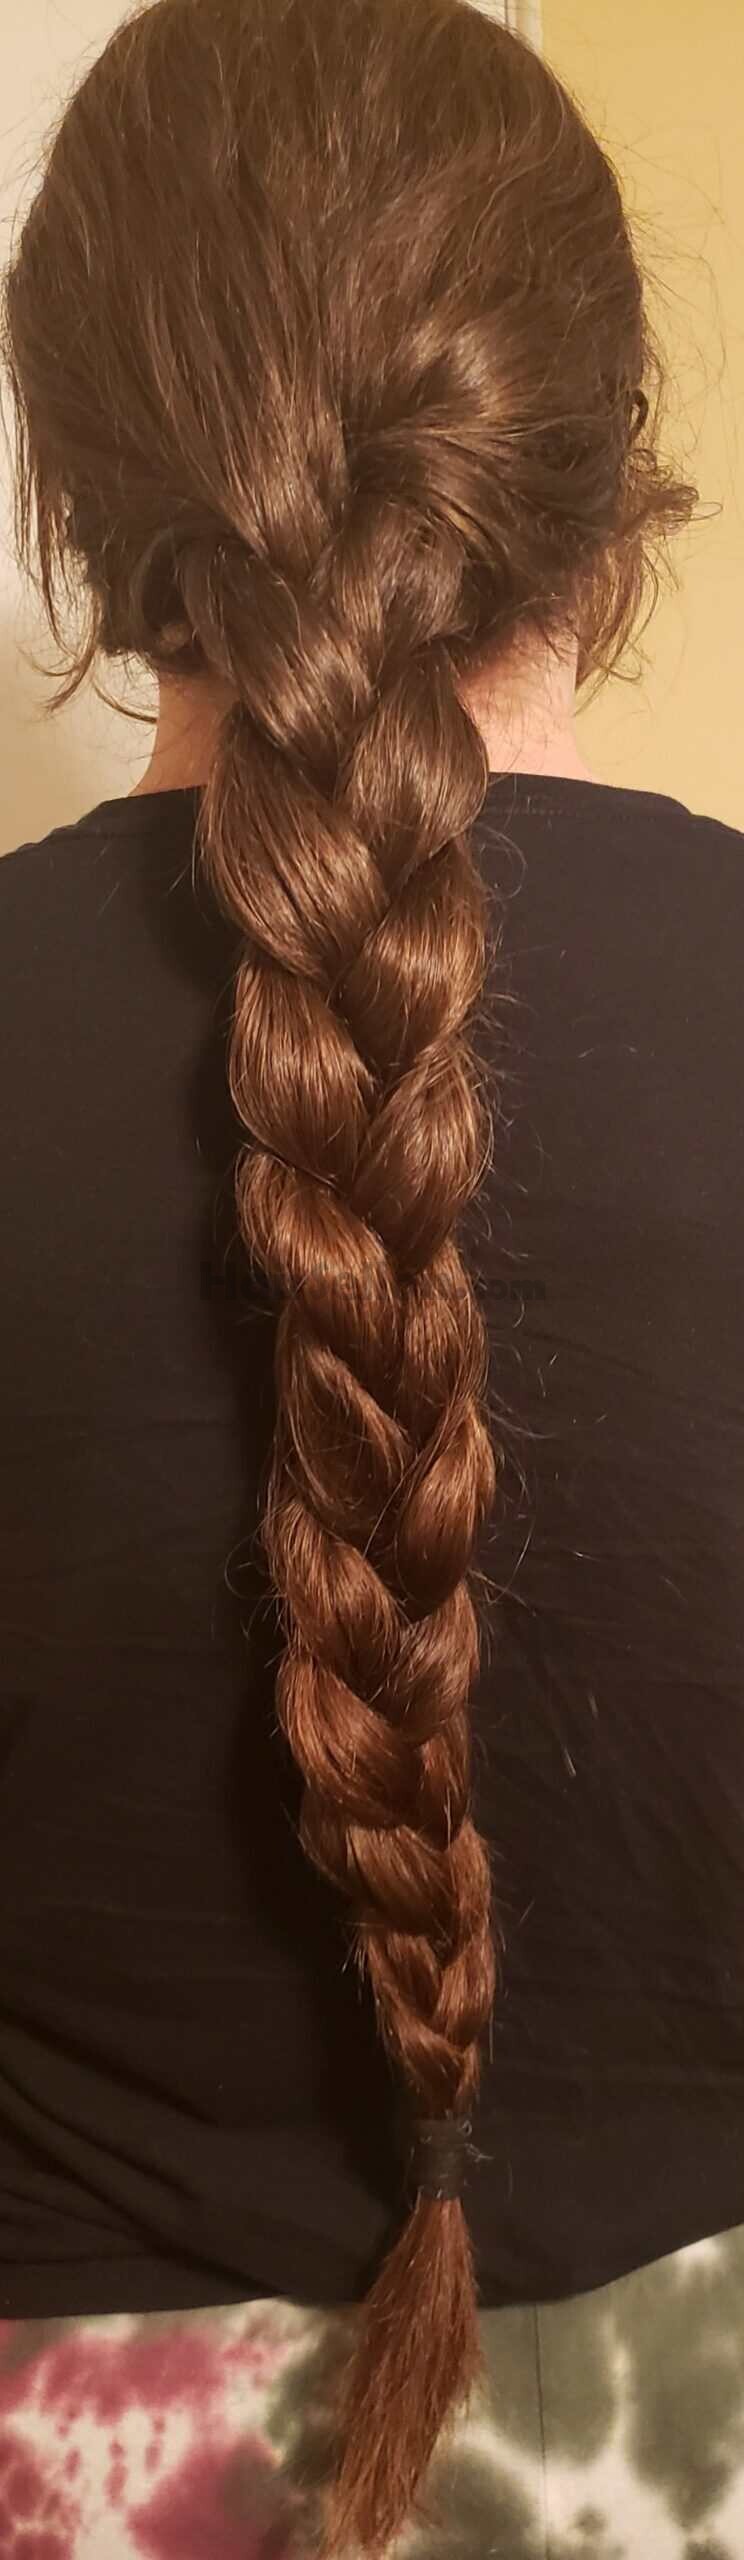 Compressed hair braid